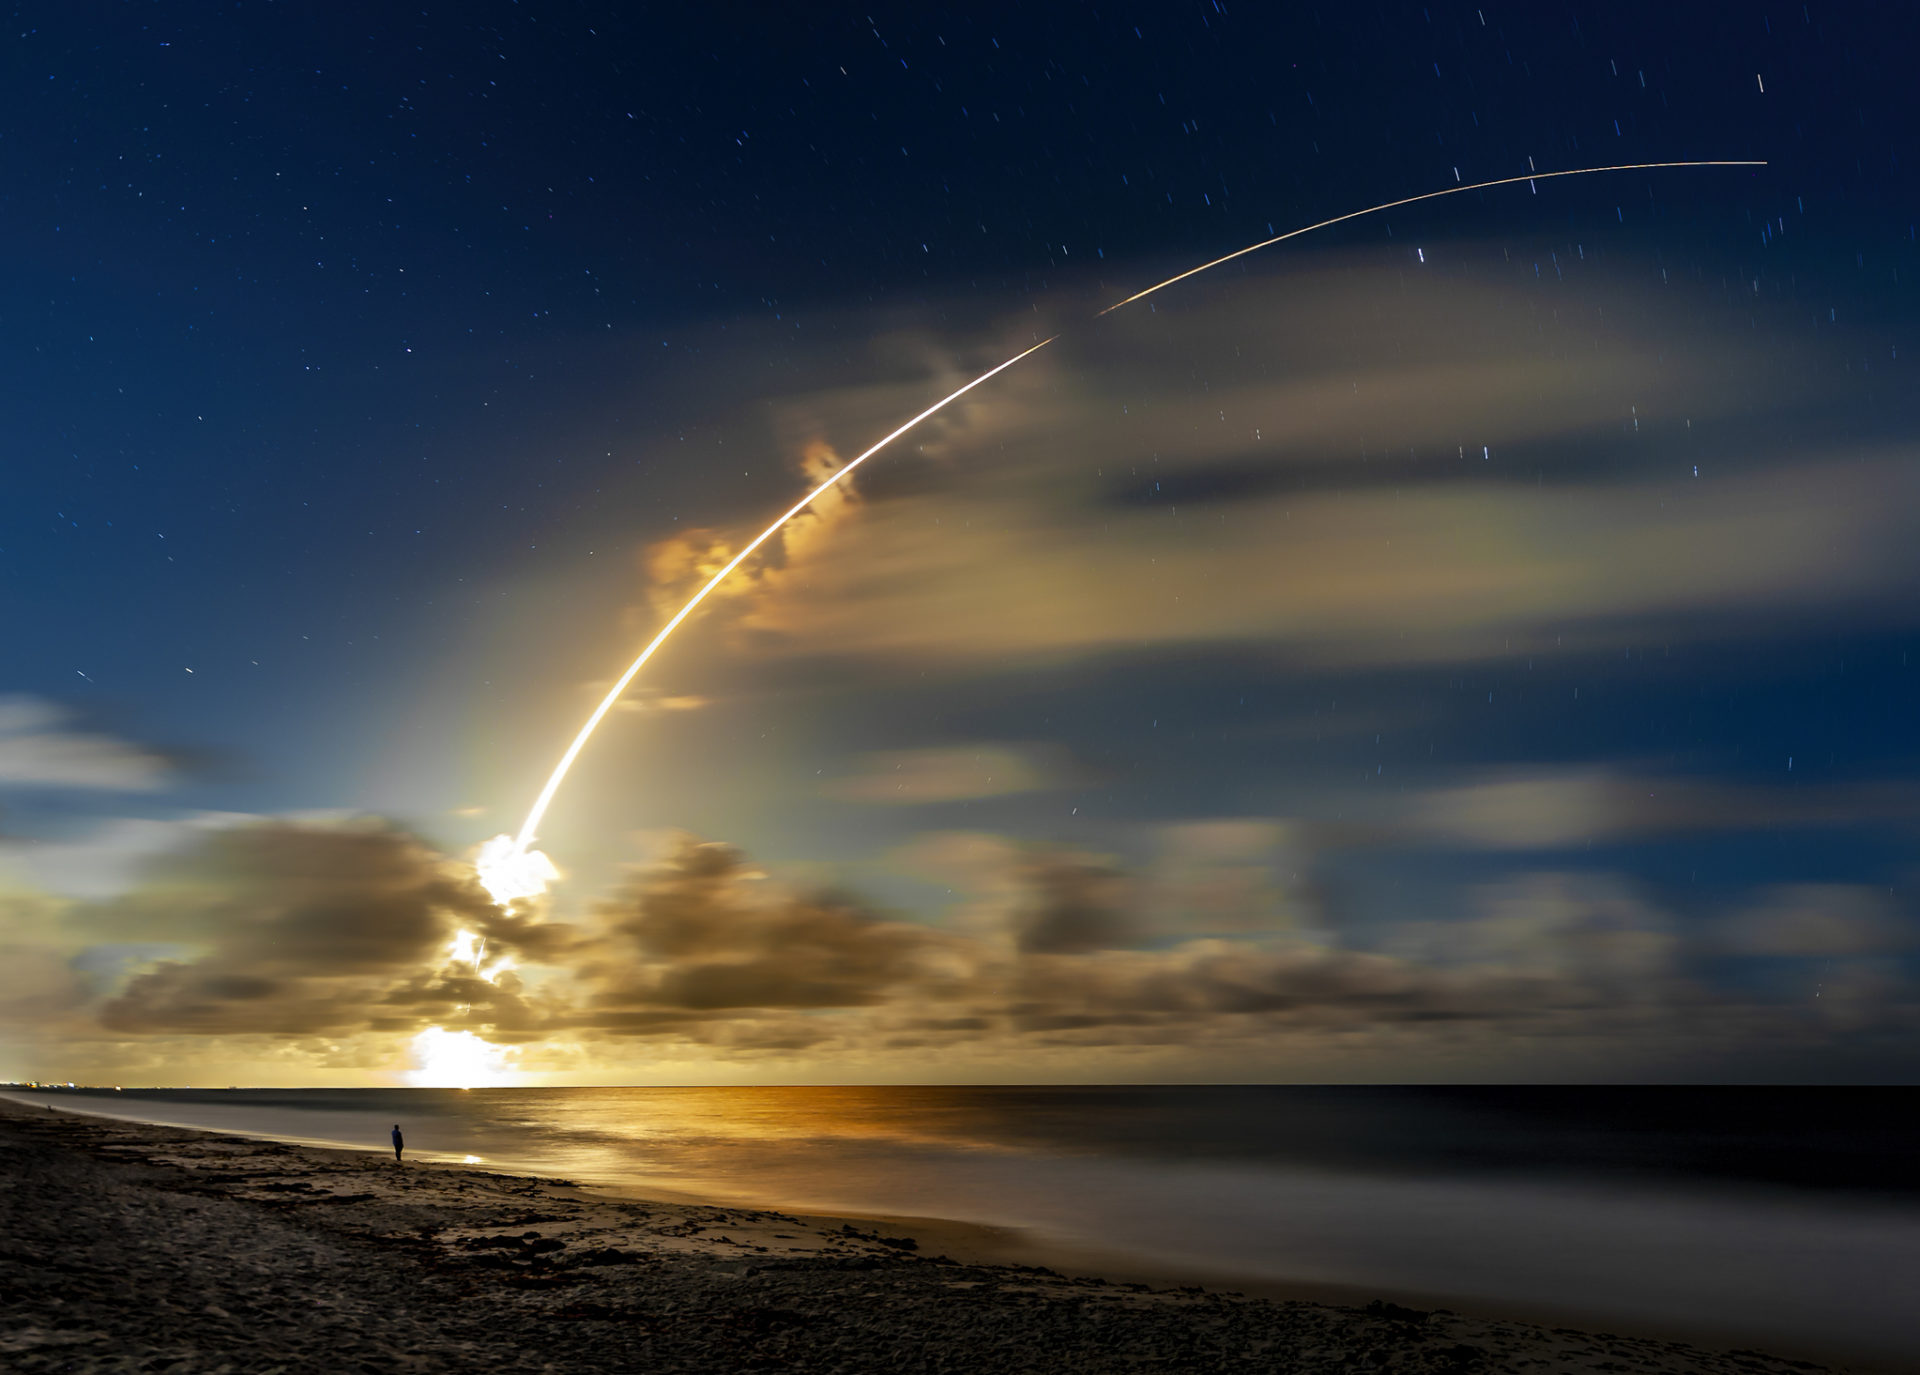 Atlas V Heavy Lift Rocket Launch